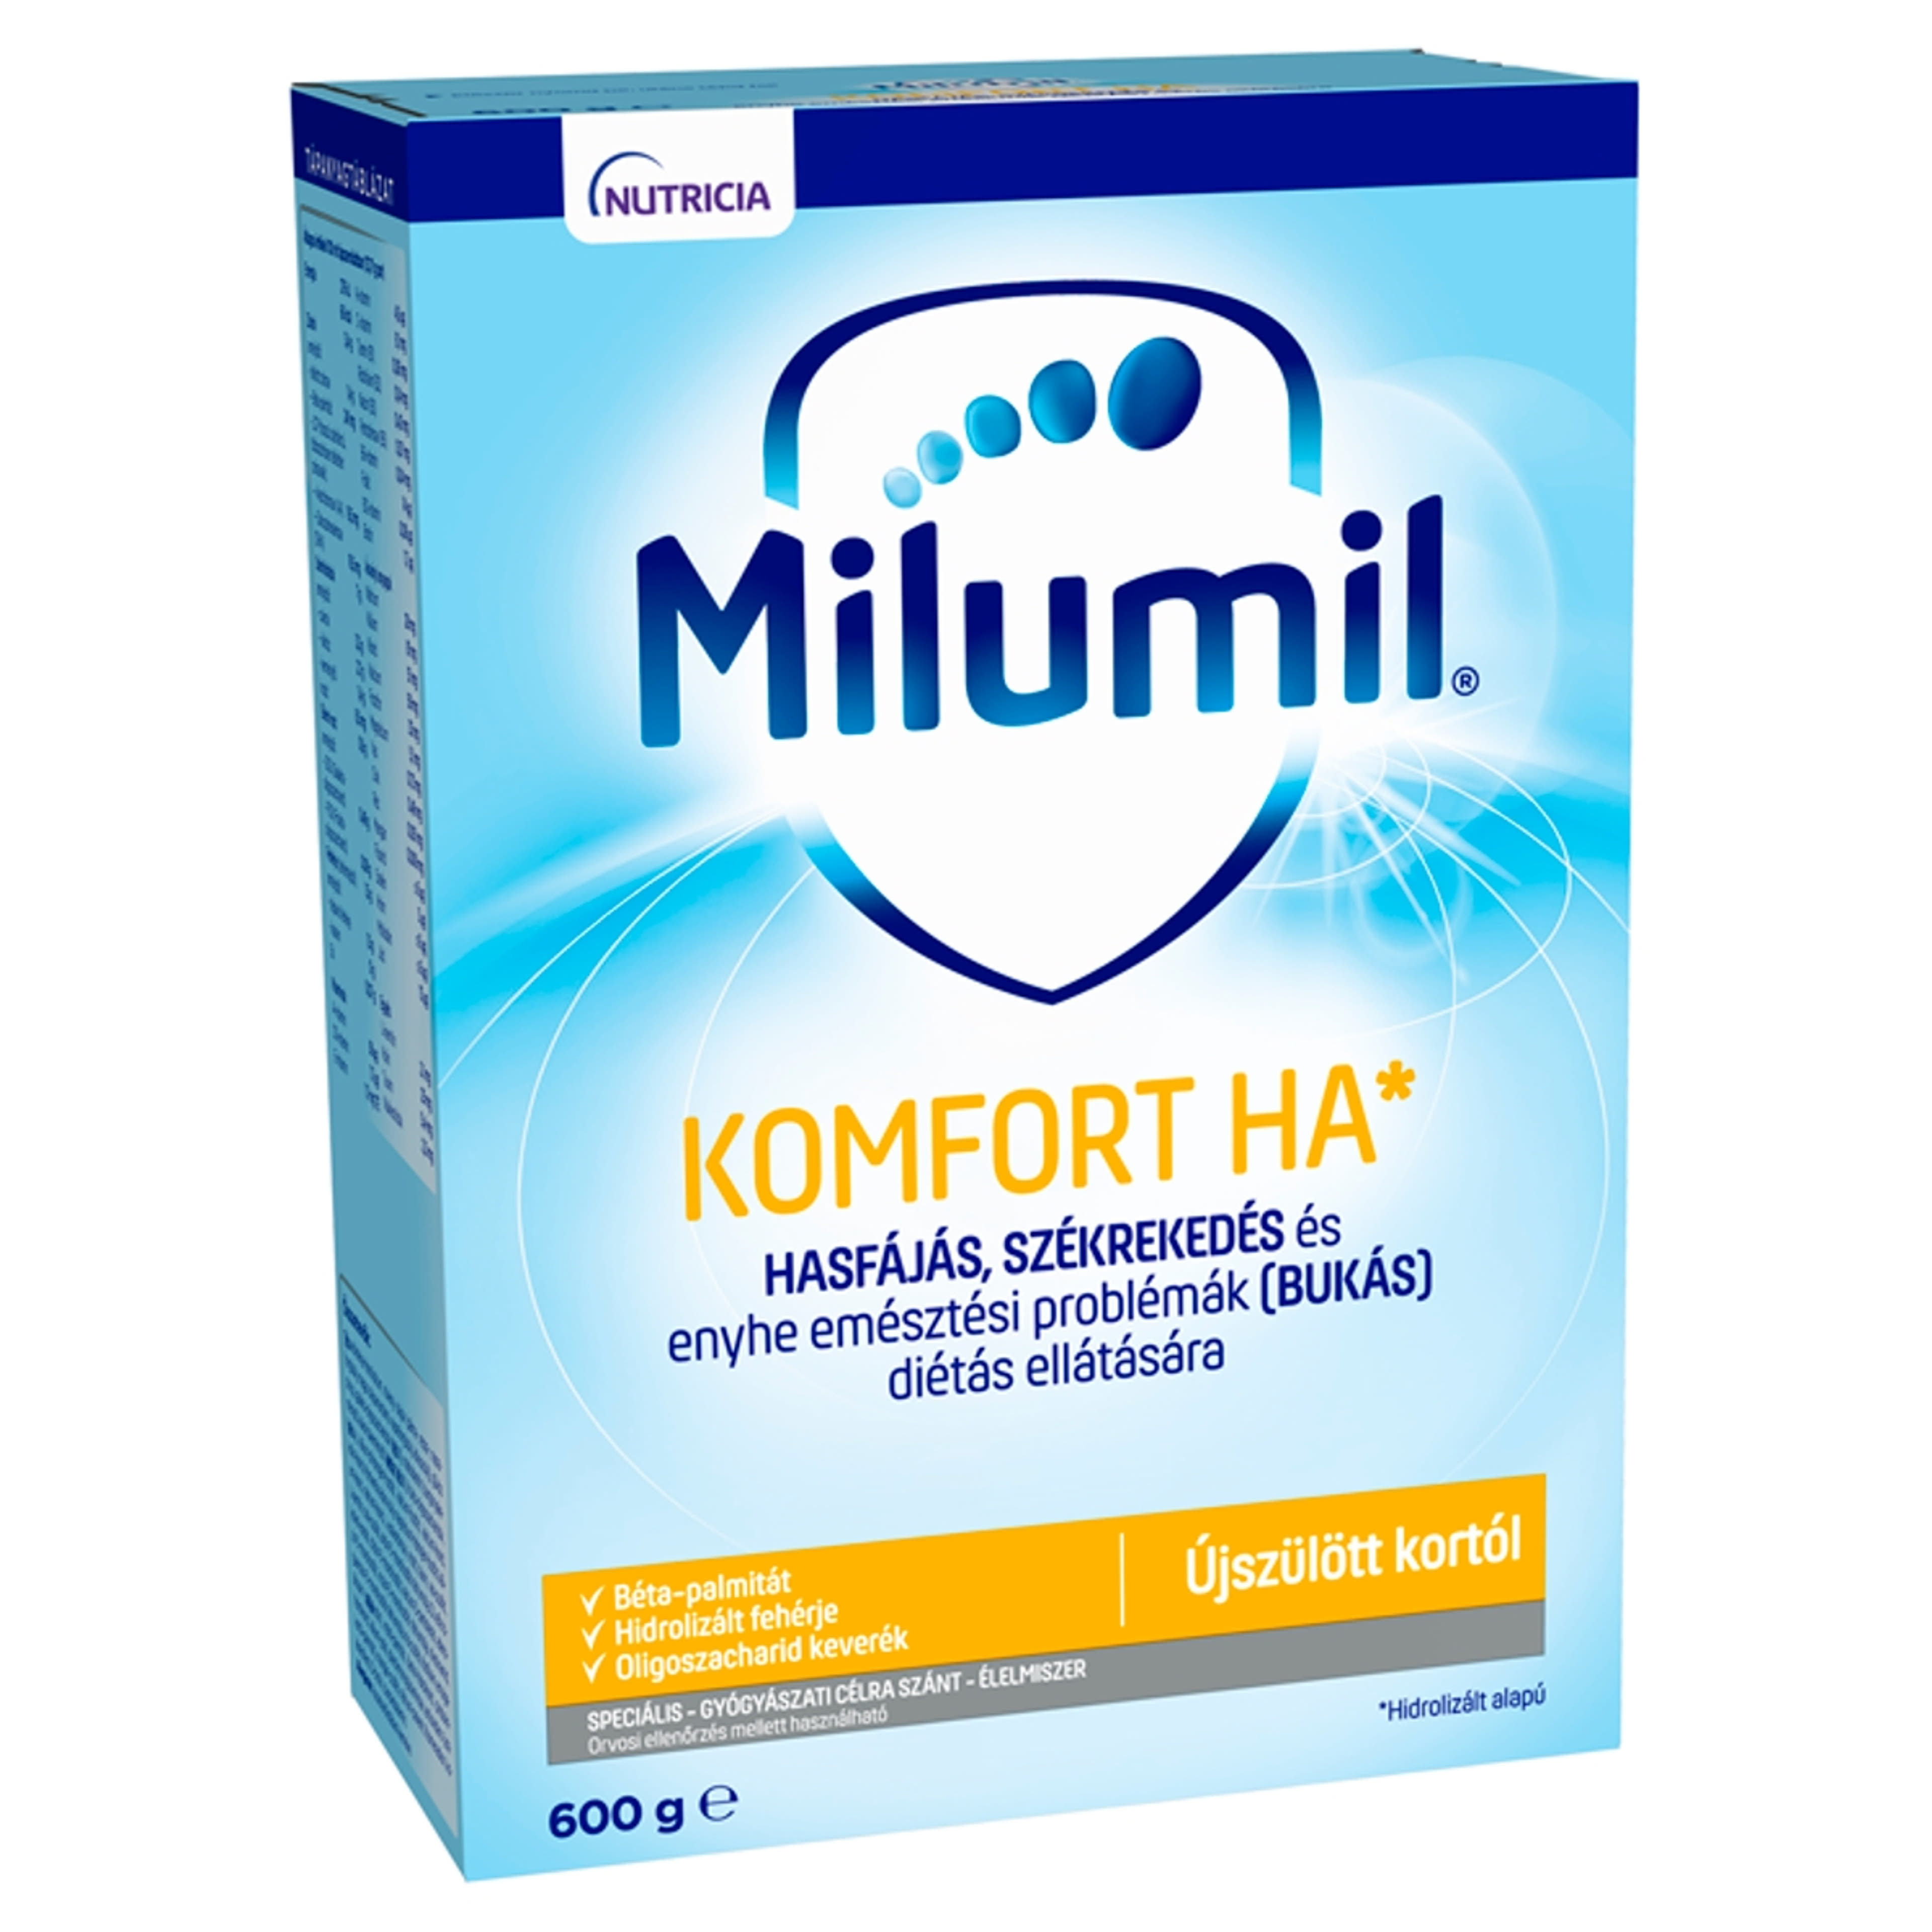 Milumil Komfort HA 1 speciális gyógyászati célra szánt élelmiszer 0 hónapos kortól - 600 g-1